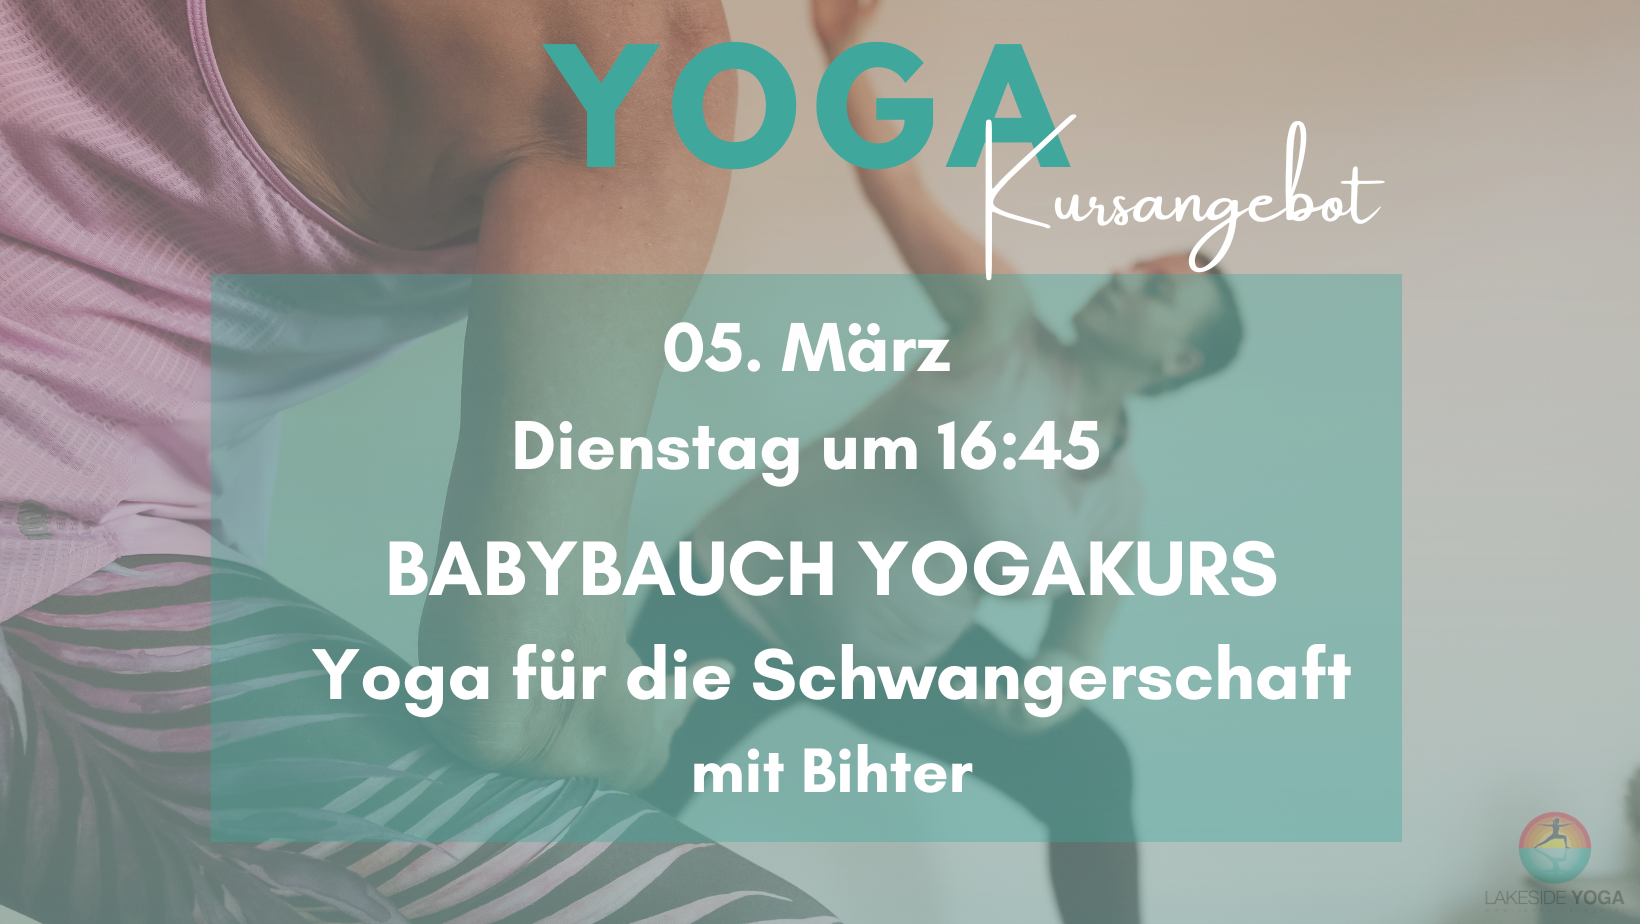 Babybauch Yogakurs-Yoga für Schwangerschaft